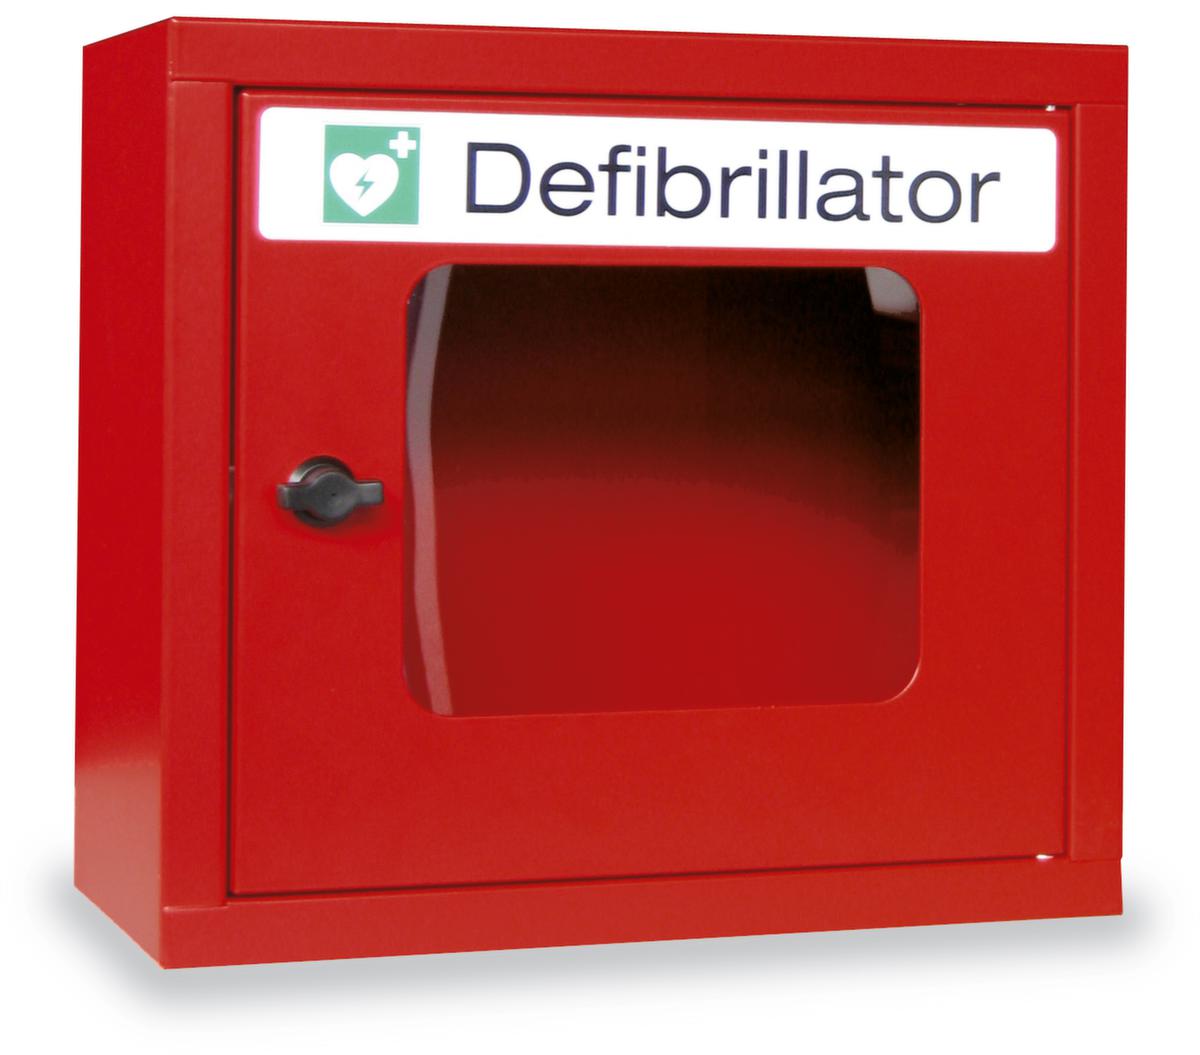 PAVOY Defibrillator muurkast met hoorbaar alarm, zonder vulling  ZOOM